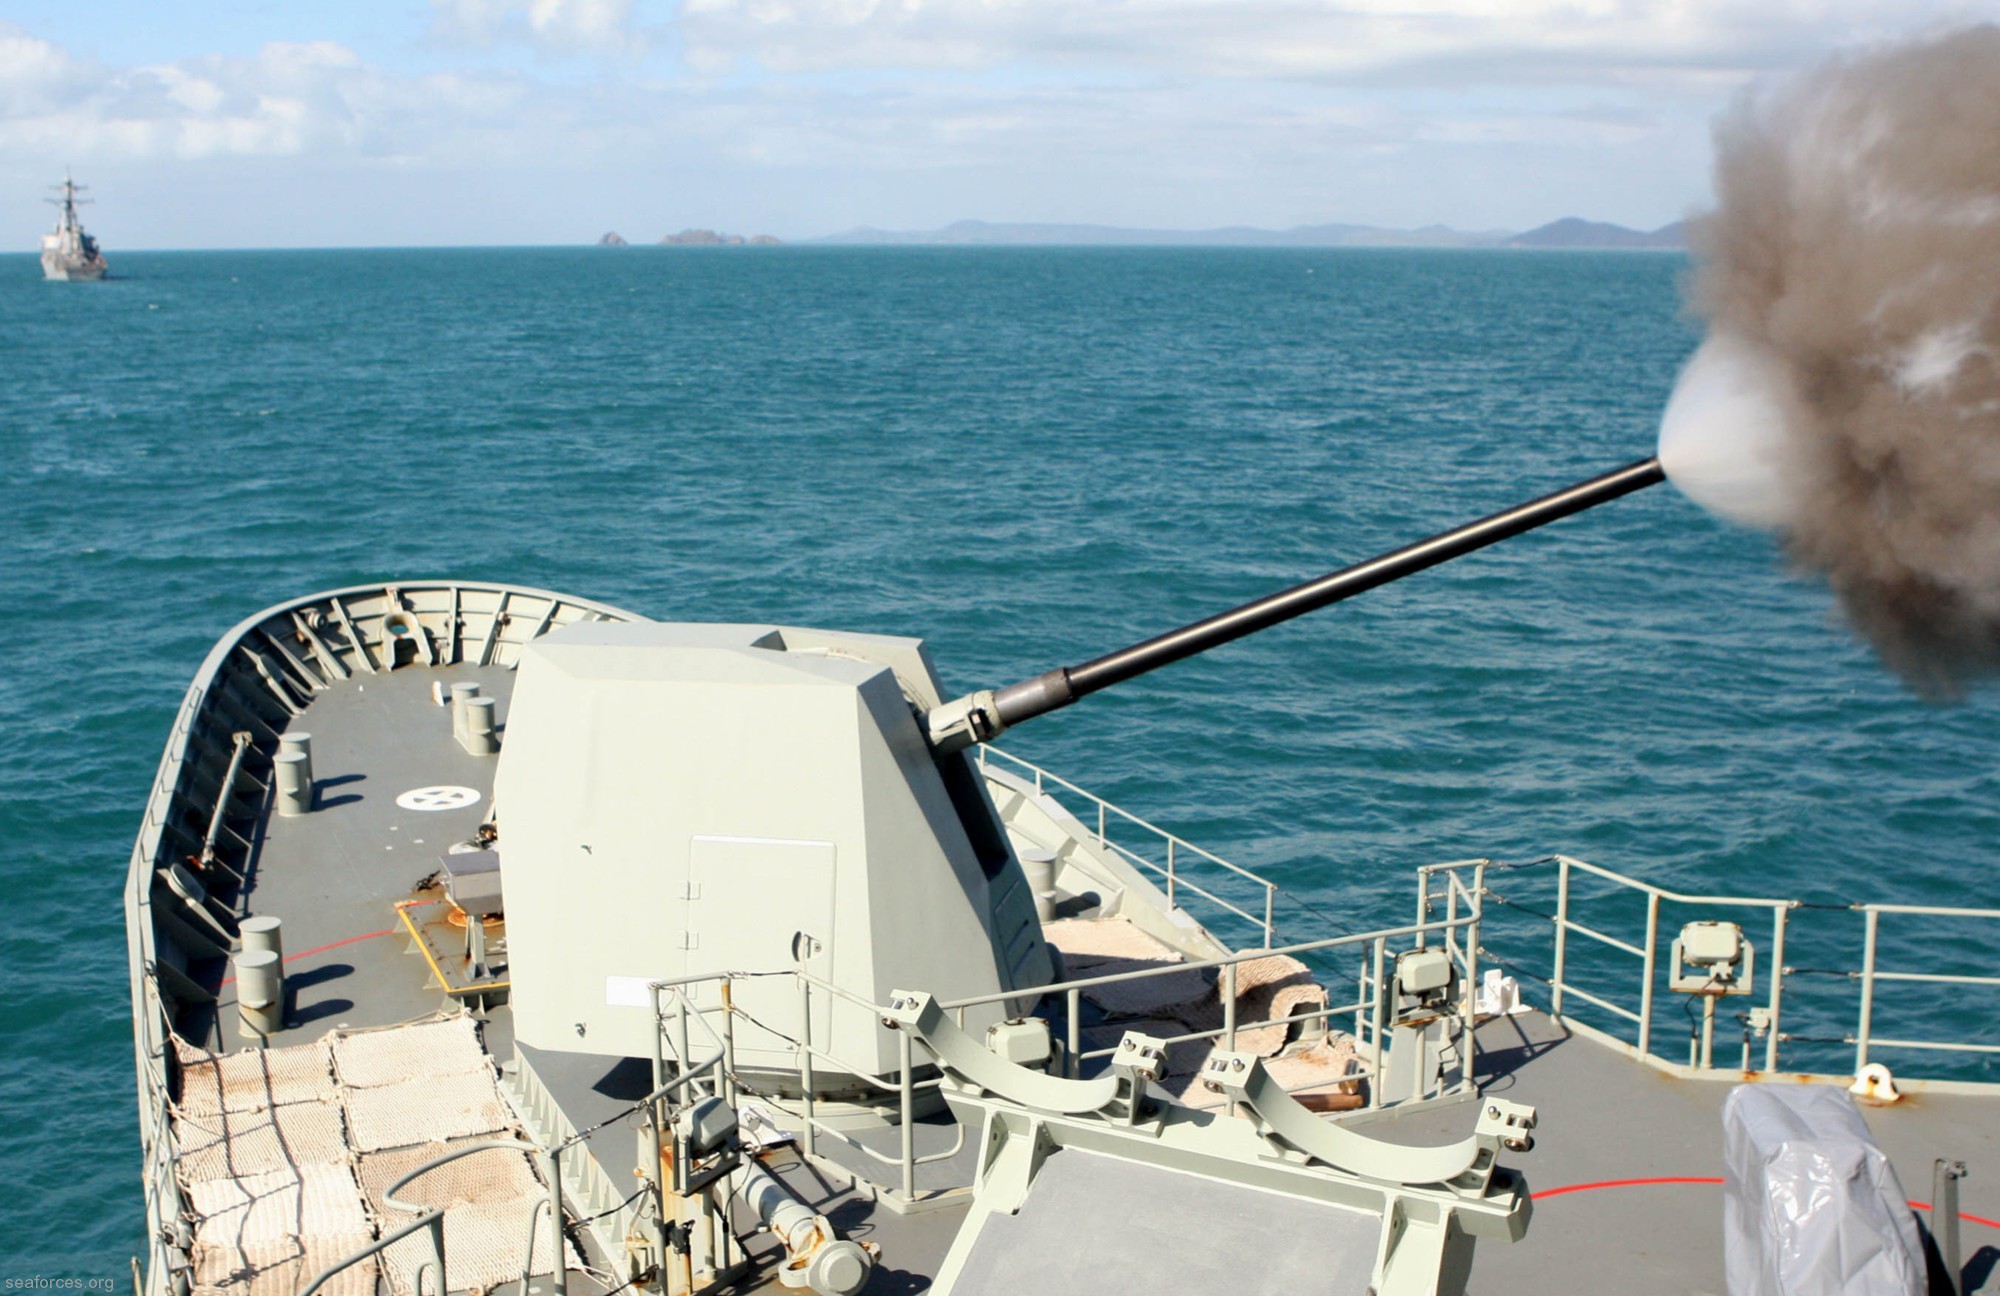 ffh-155 hms ballarat anzac class frigate royal australian navy 2011 33 mk-45 5" 54 caliber gun fire